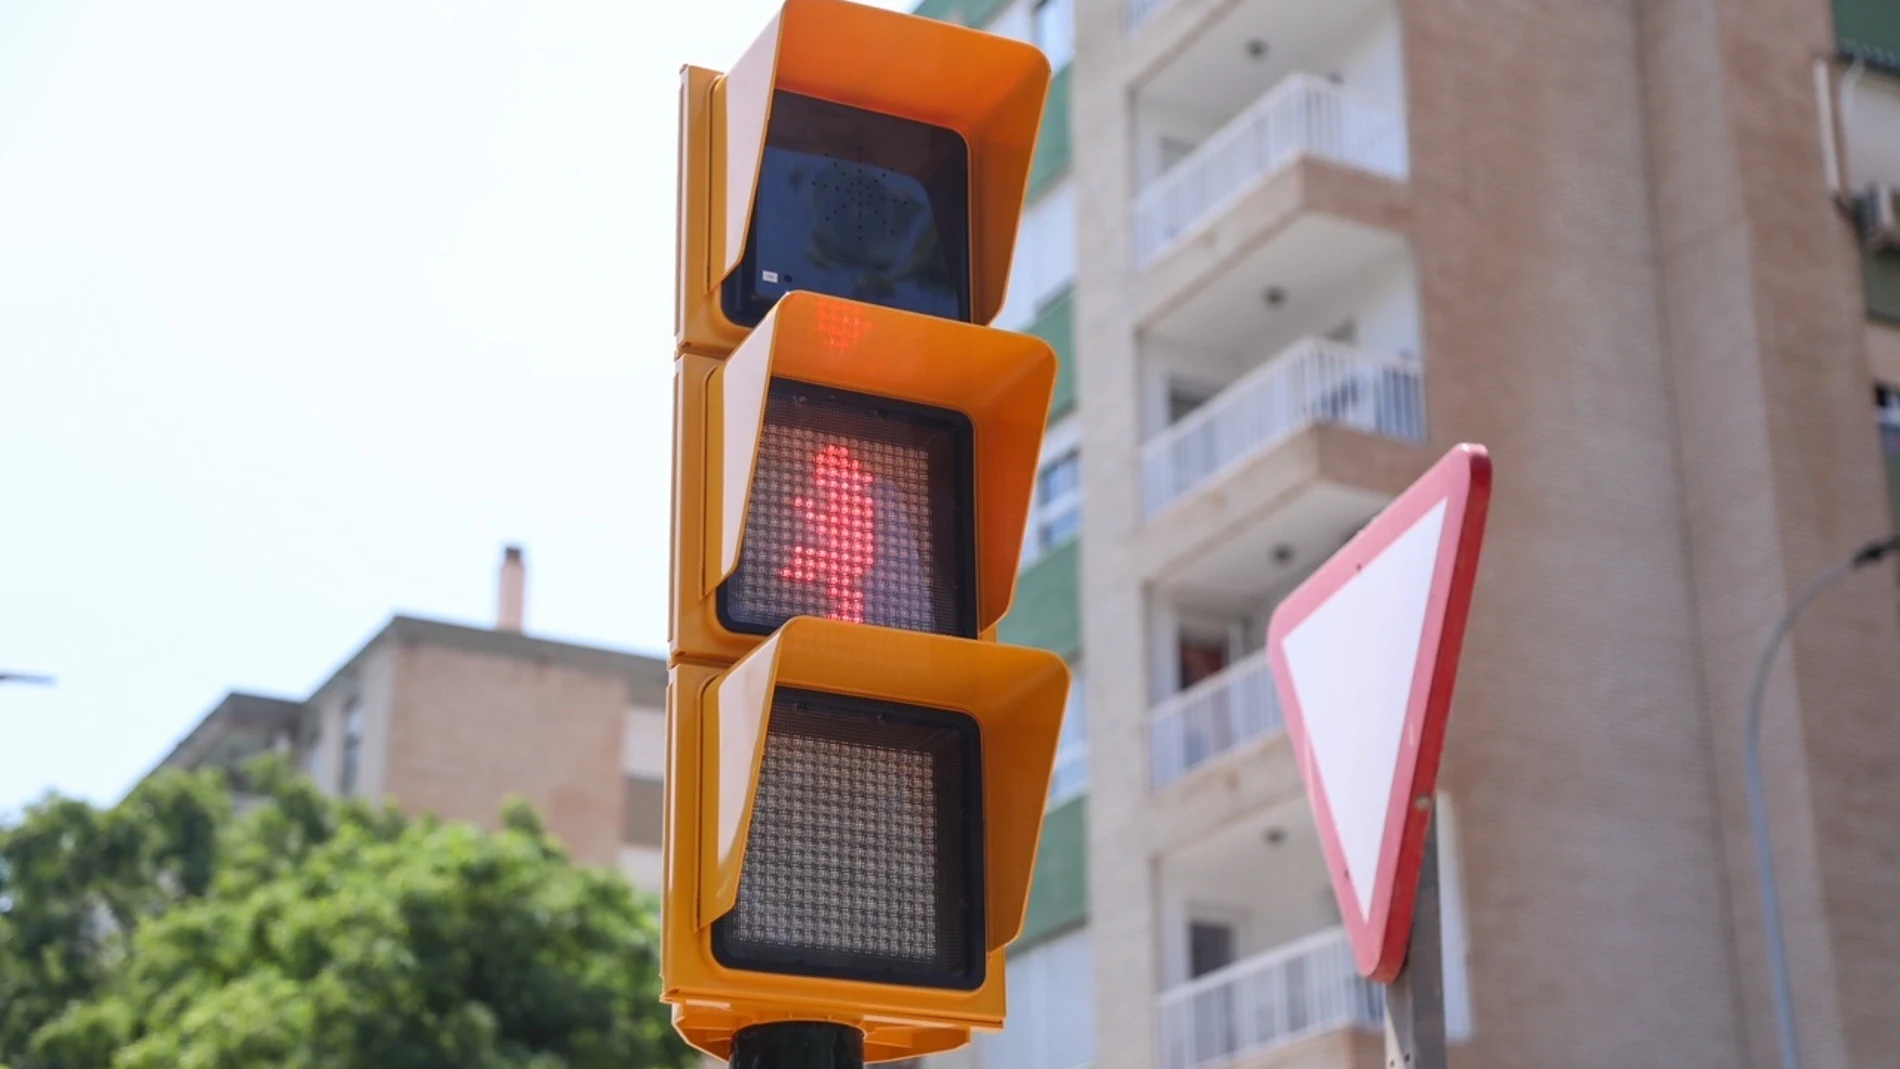 El semáforo, en la posición de rojo con una de las posturas más clásicas de Chiquito